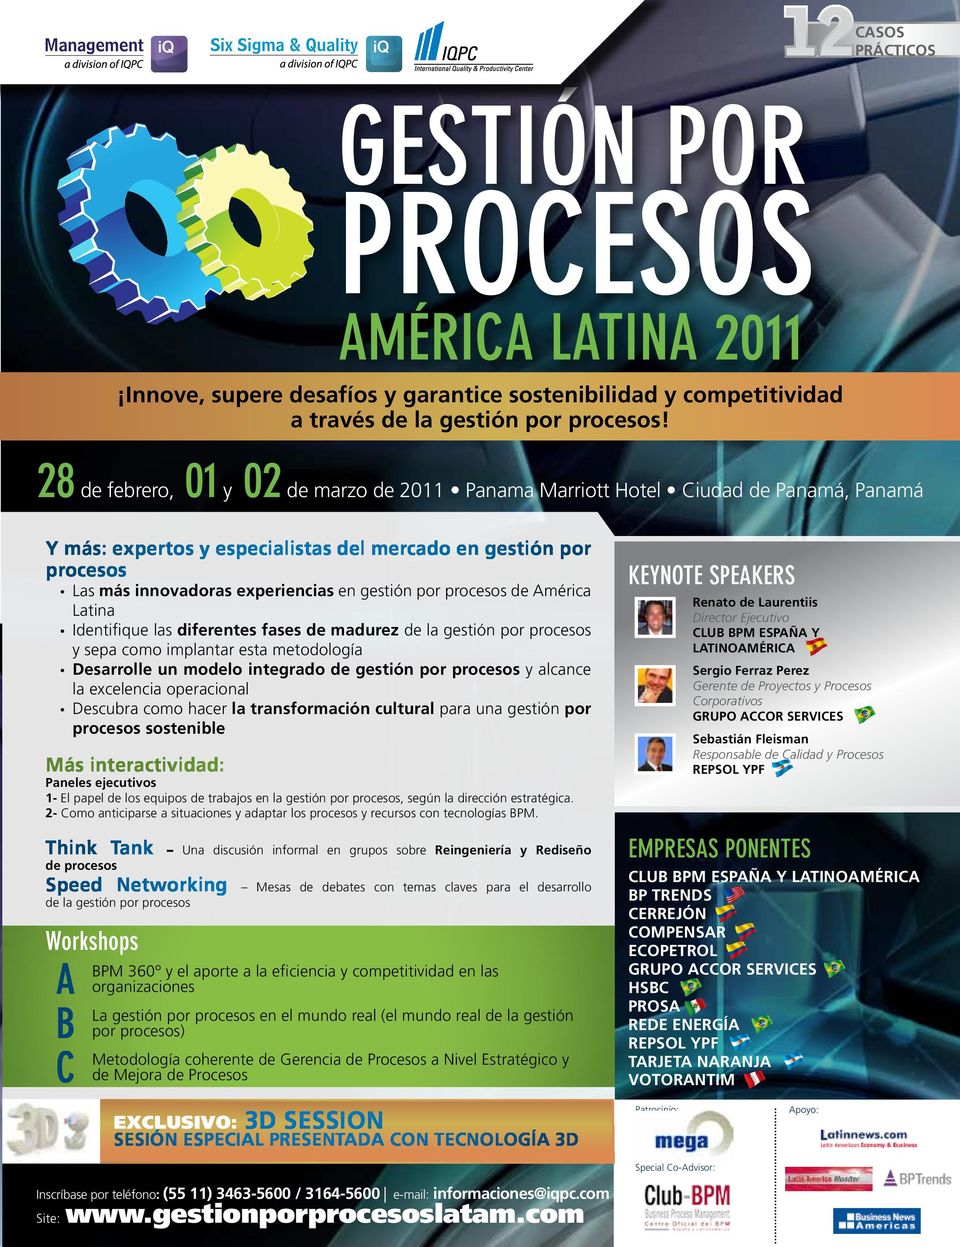 por procesos de América Latina Identifique las diferentes fases de madurez de la gestión por procesos y sepa como implantar esta metodología Desarrolle un modelo integrado de gestión por procesos y